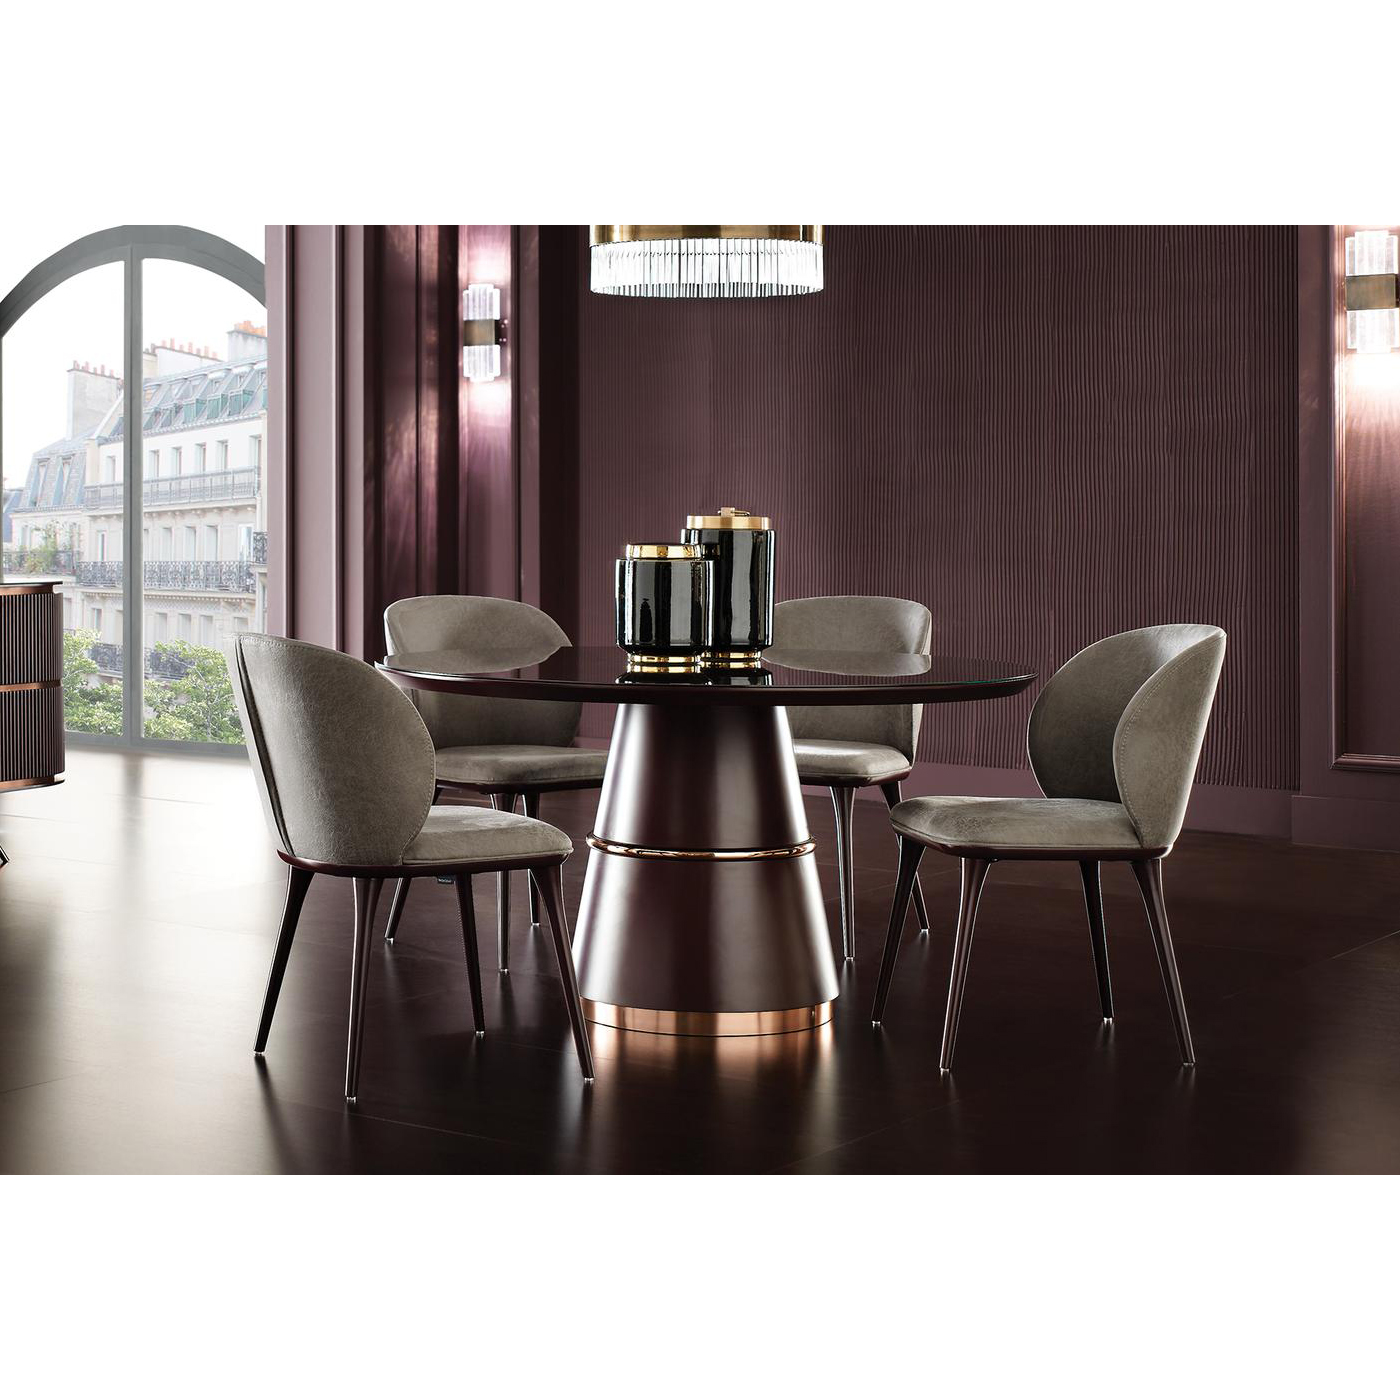 Стол обеденный Enza Home Vienna, круглый, стеклянная поверхность, размер 140х140х76 см, цвет бордовый07.182.0551.1213.0000.0007.